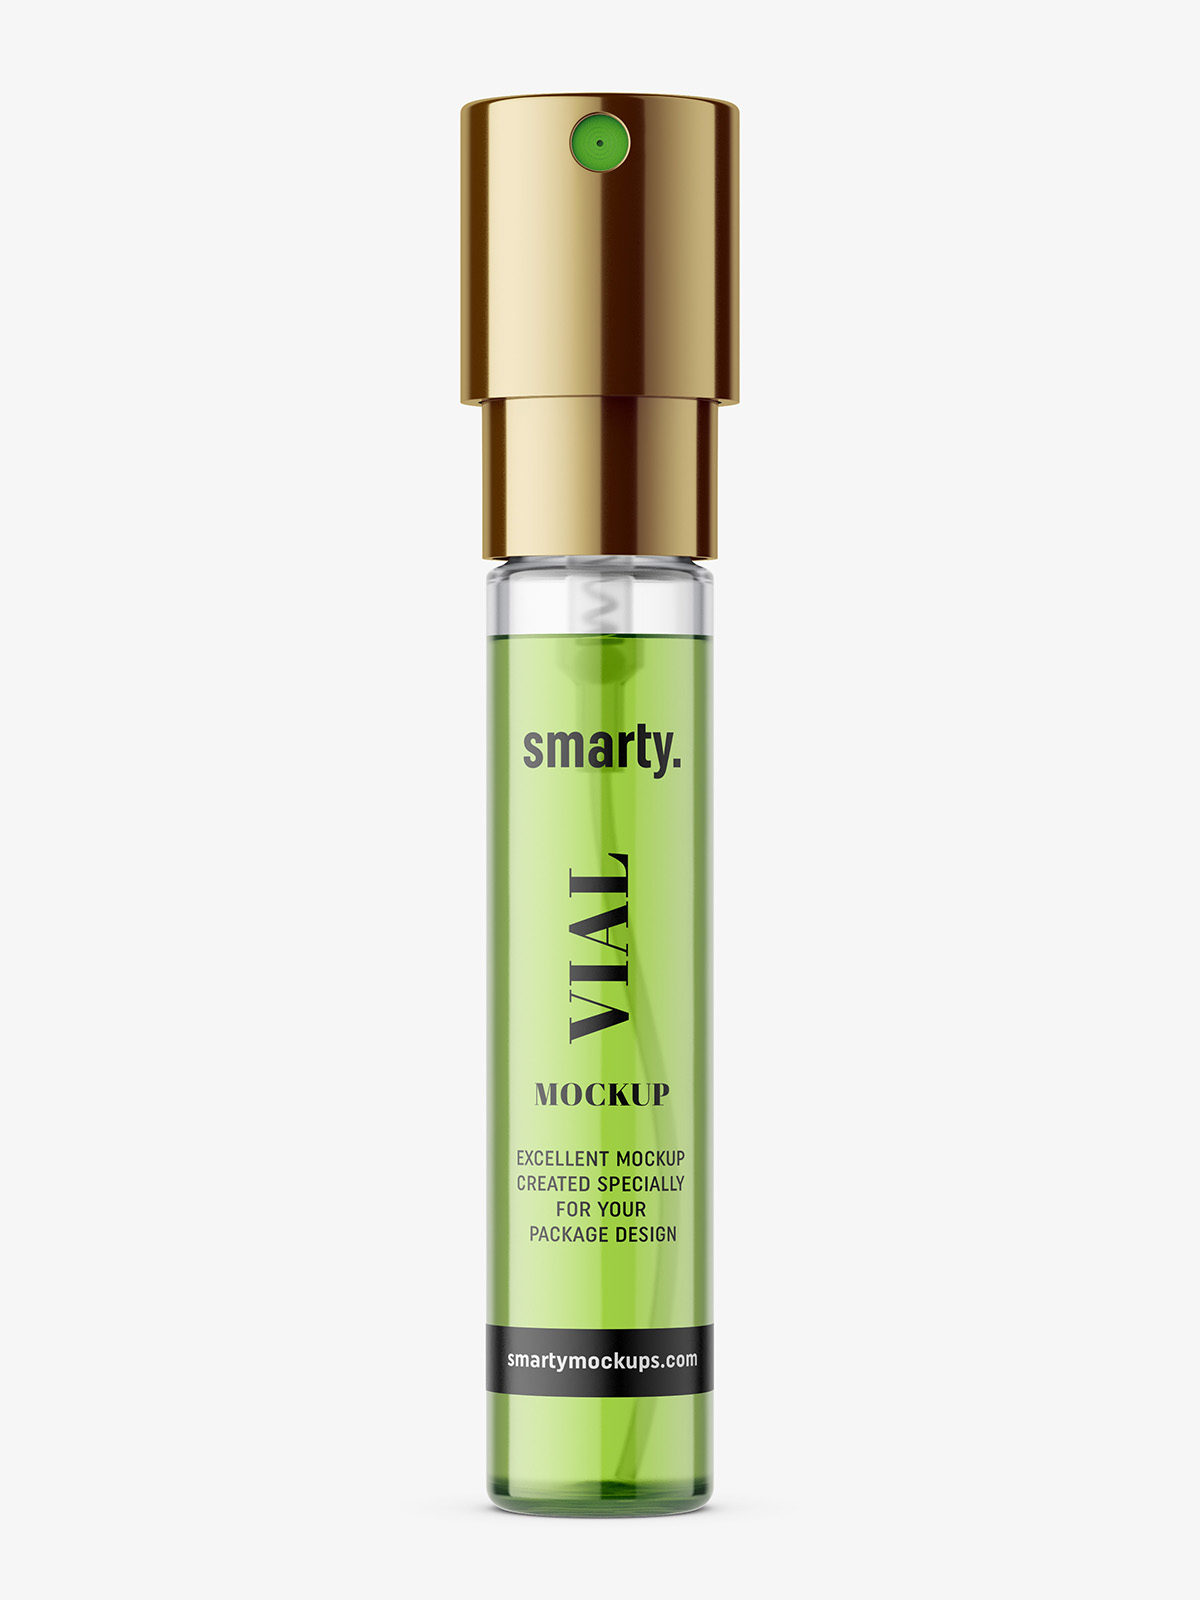 Download Small perfume vial mockup / glass - Smarty Mockups